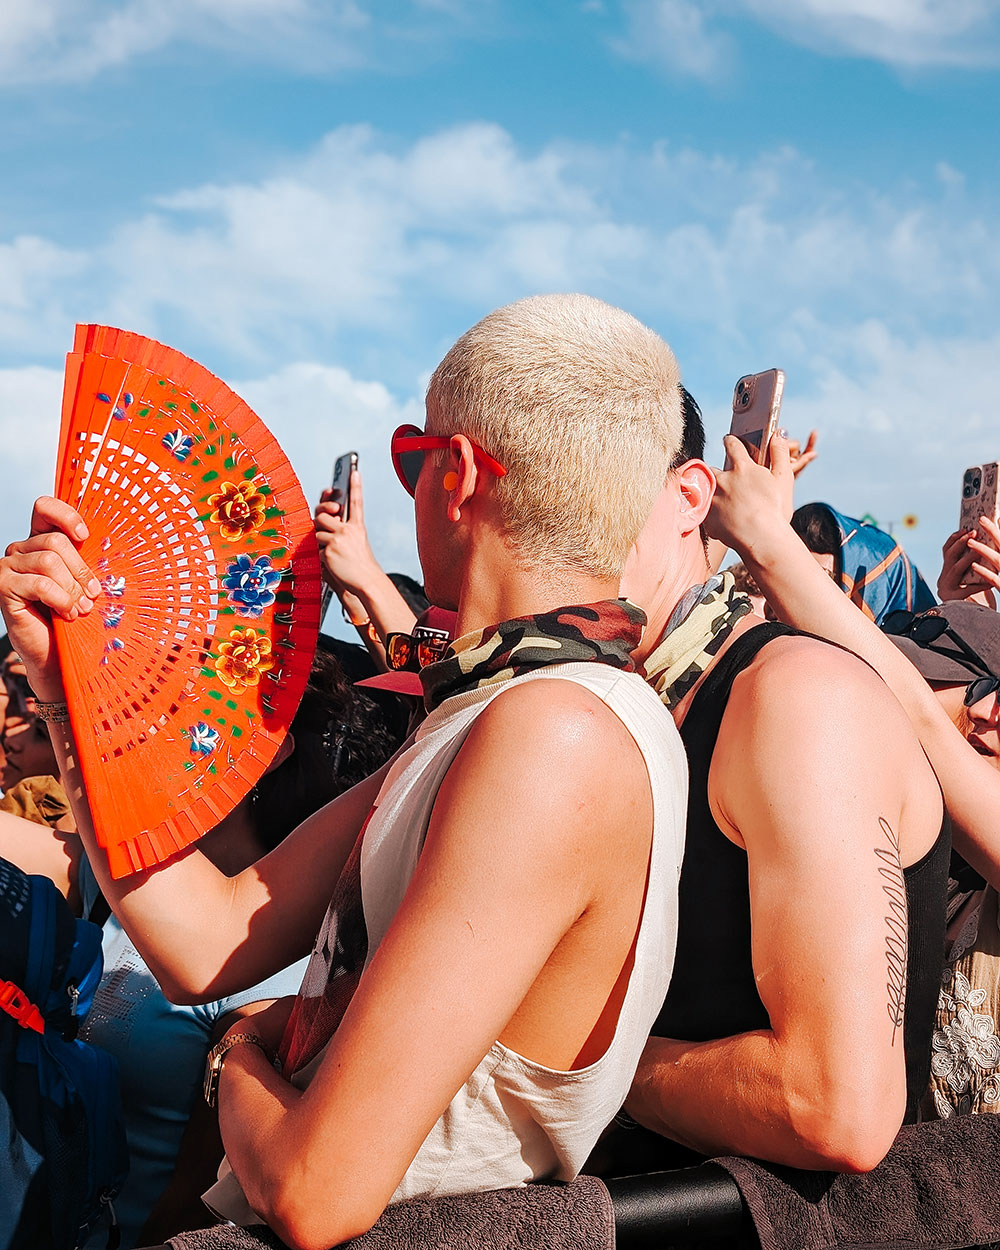 Festivalgoer holding hand fan